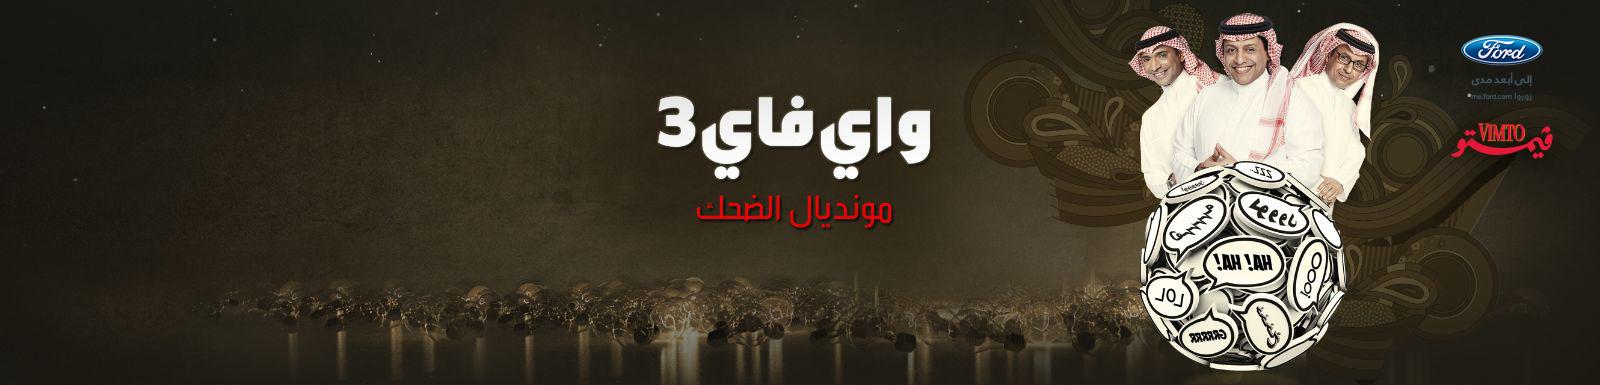 بالفيديو ، يمني يخطب واي فاي 3